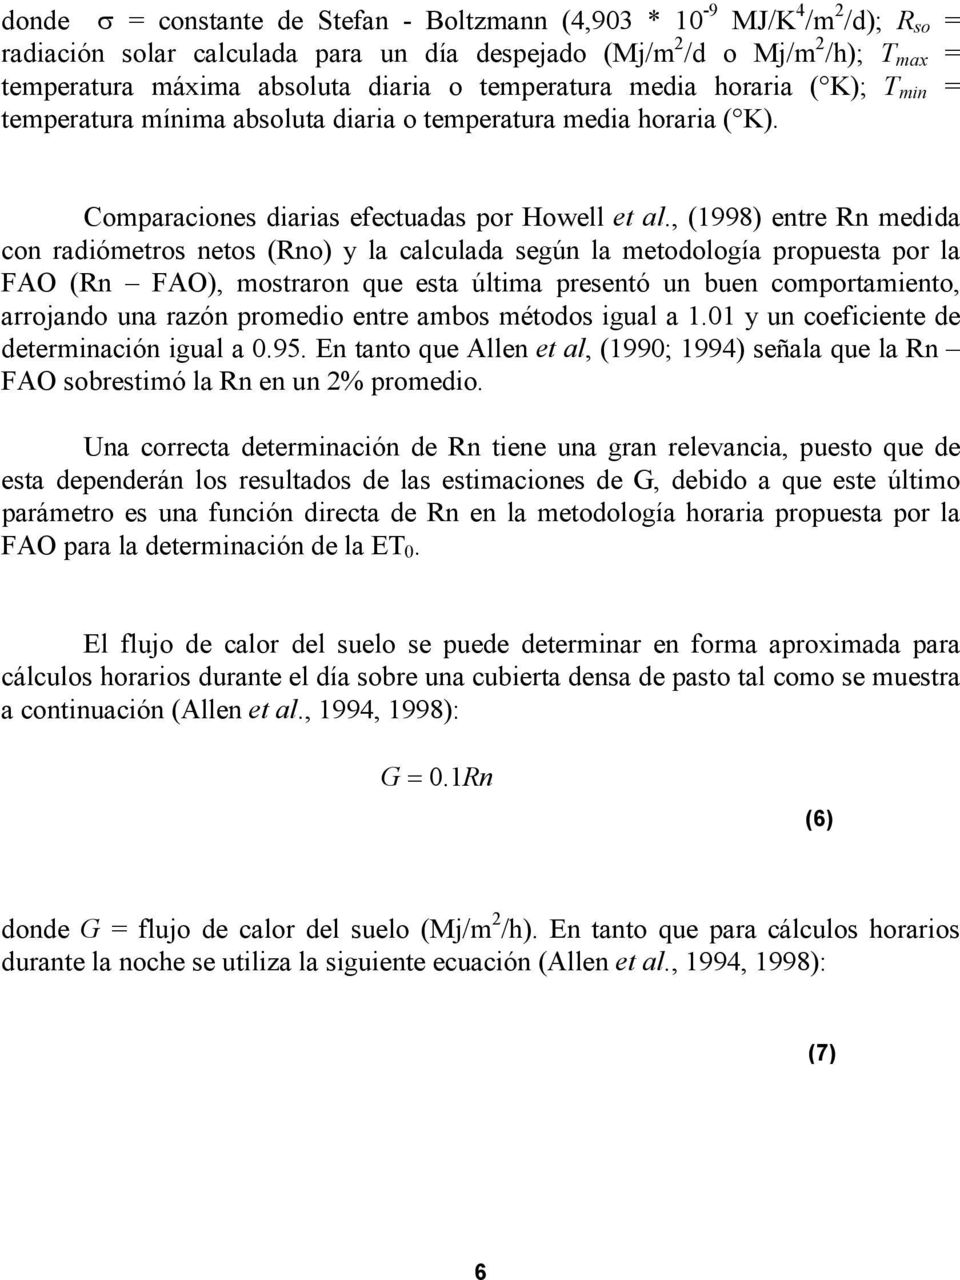 , (1998) entre Rn medida con radiómetros netos (Rno) y la calculada según la metodología propuesta por la FAO (Rn FAO), mostraron que esta última presentó un buen comportamiento, arrojando una razón